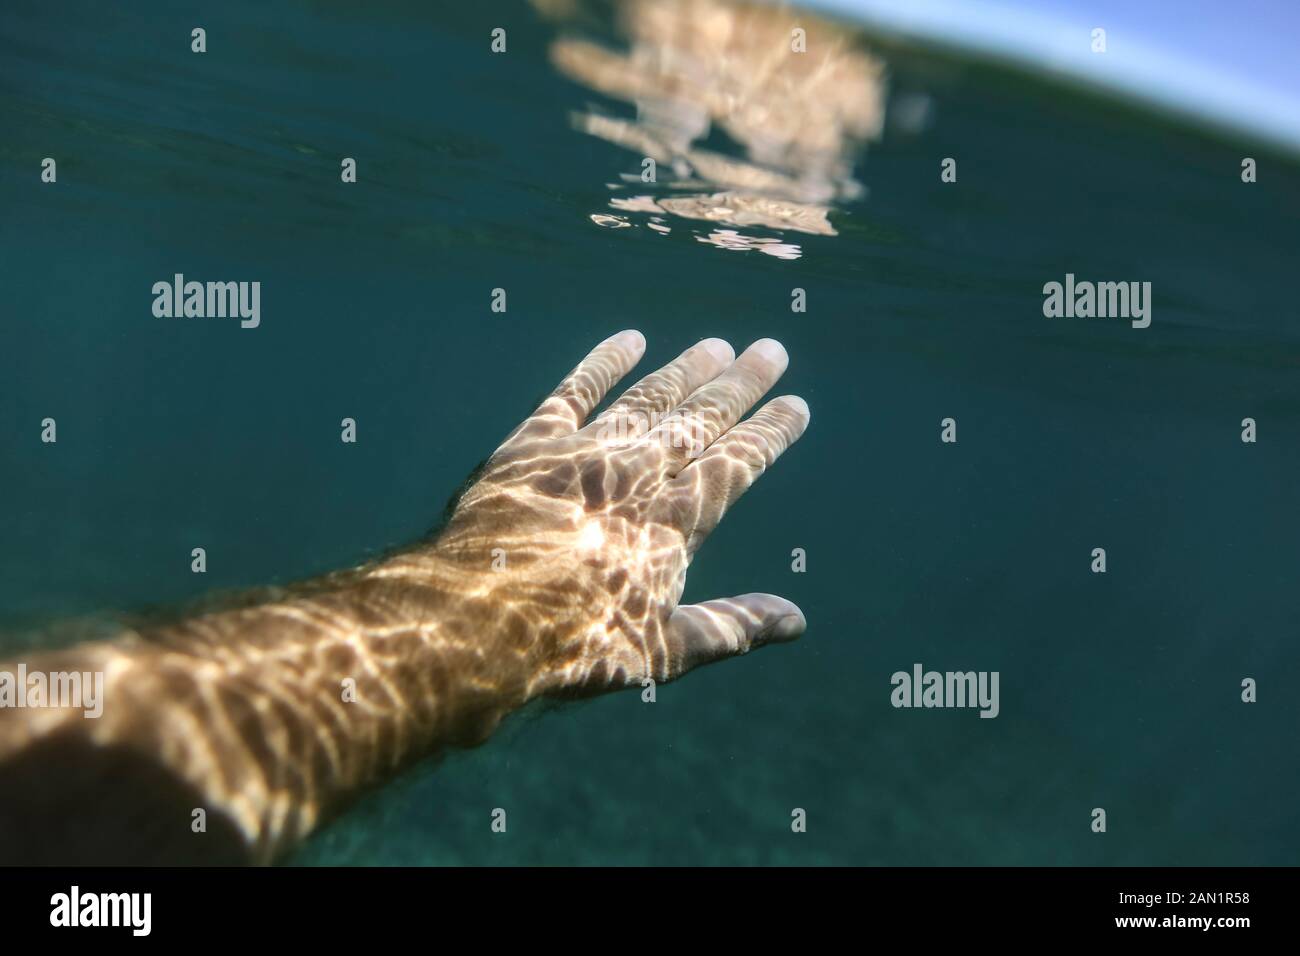 Persona irreconocible nadando bajo el agua Foto de stock